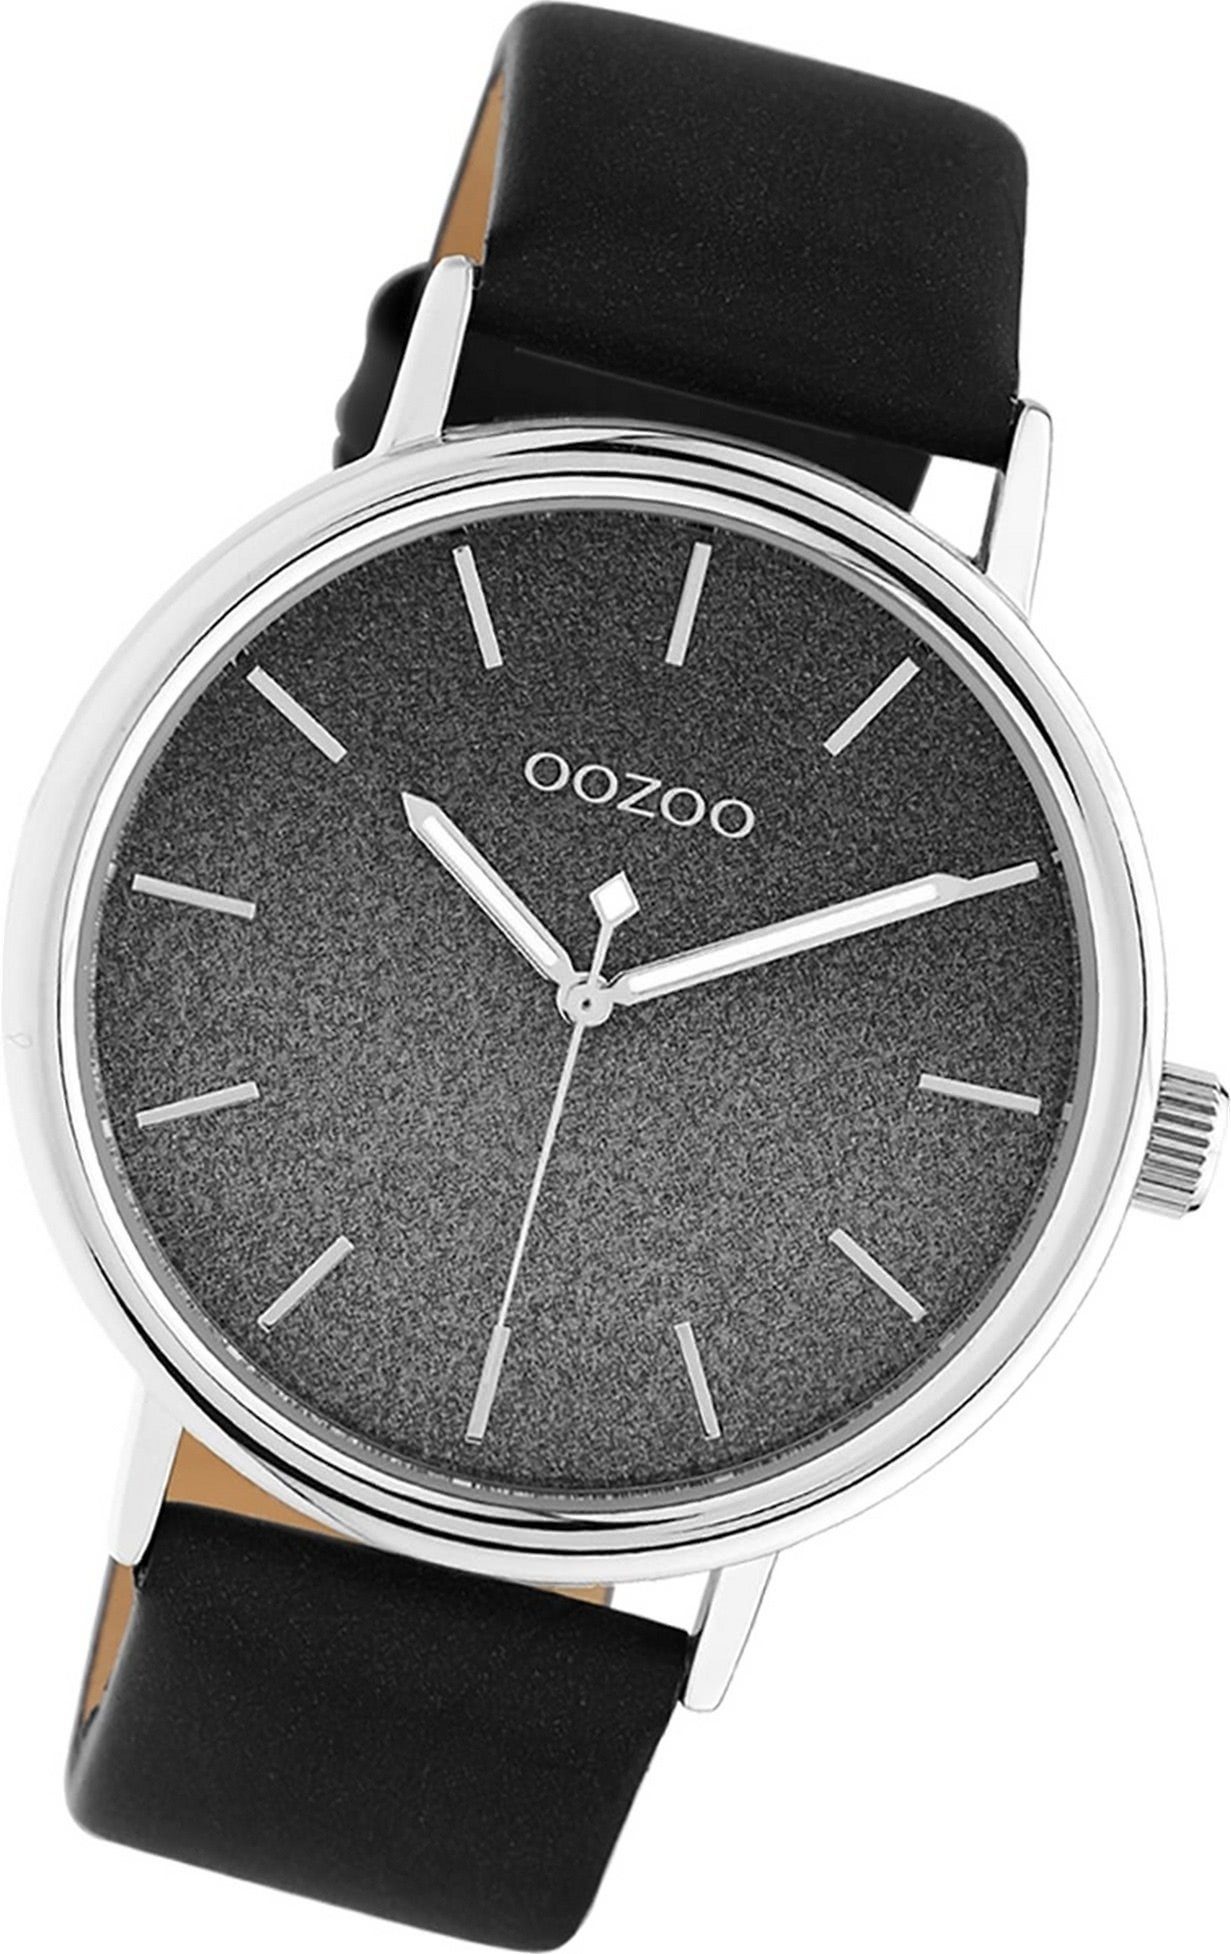 Analog, Oozoo Leder Uhr Damen OOZOO (ca. Damenuhr groß Quarzuhr Lederarmband C10939 rundes Gehäuse, schwarz, 42mm)